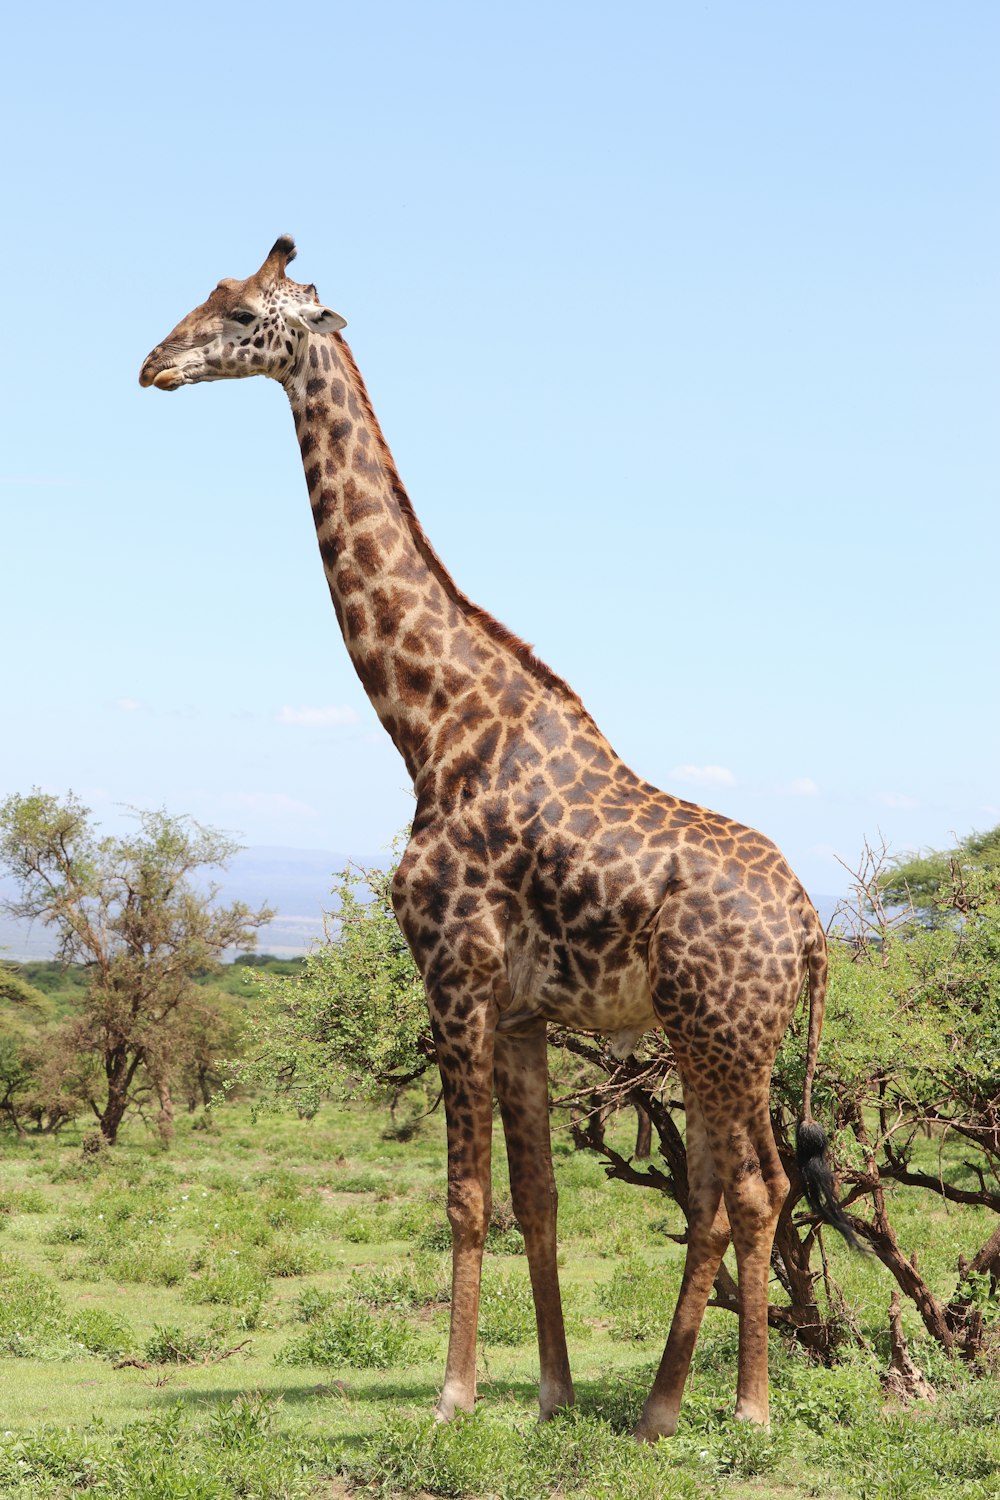 Giraffe, die tagsüber auf grünem Gras steht